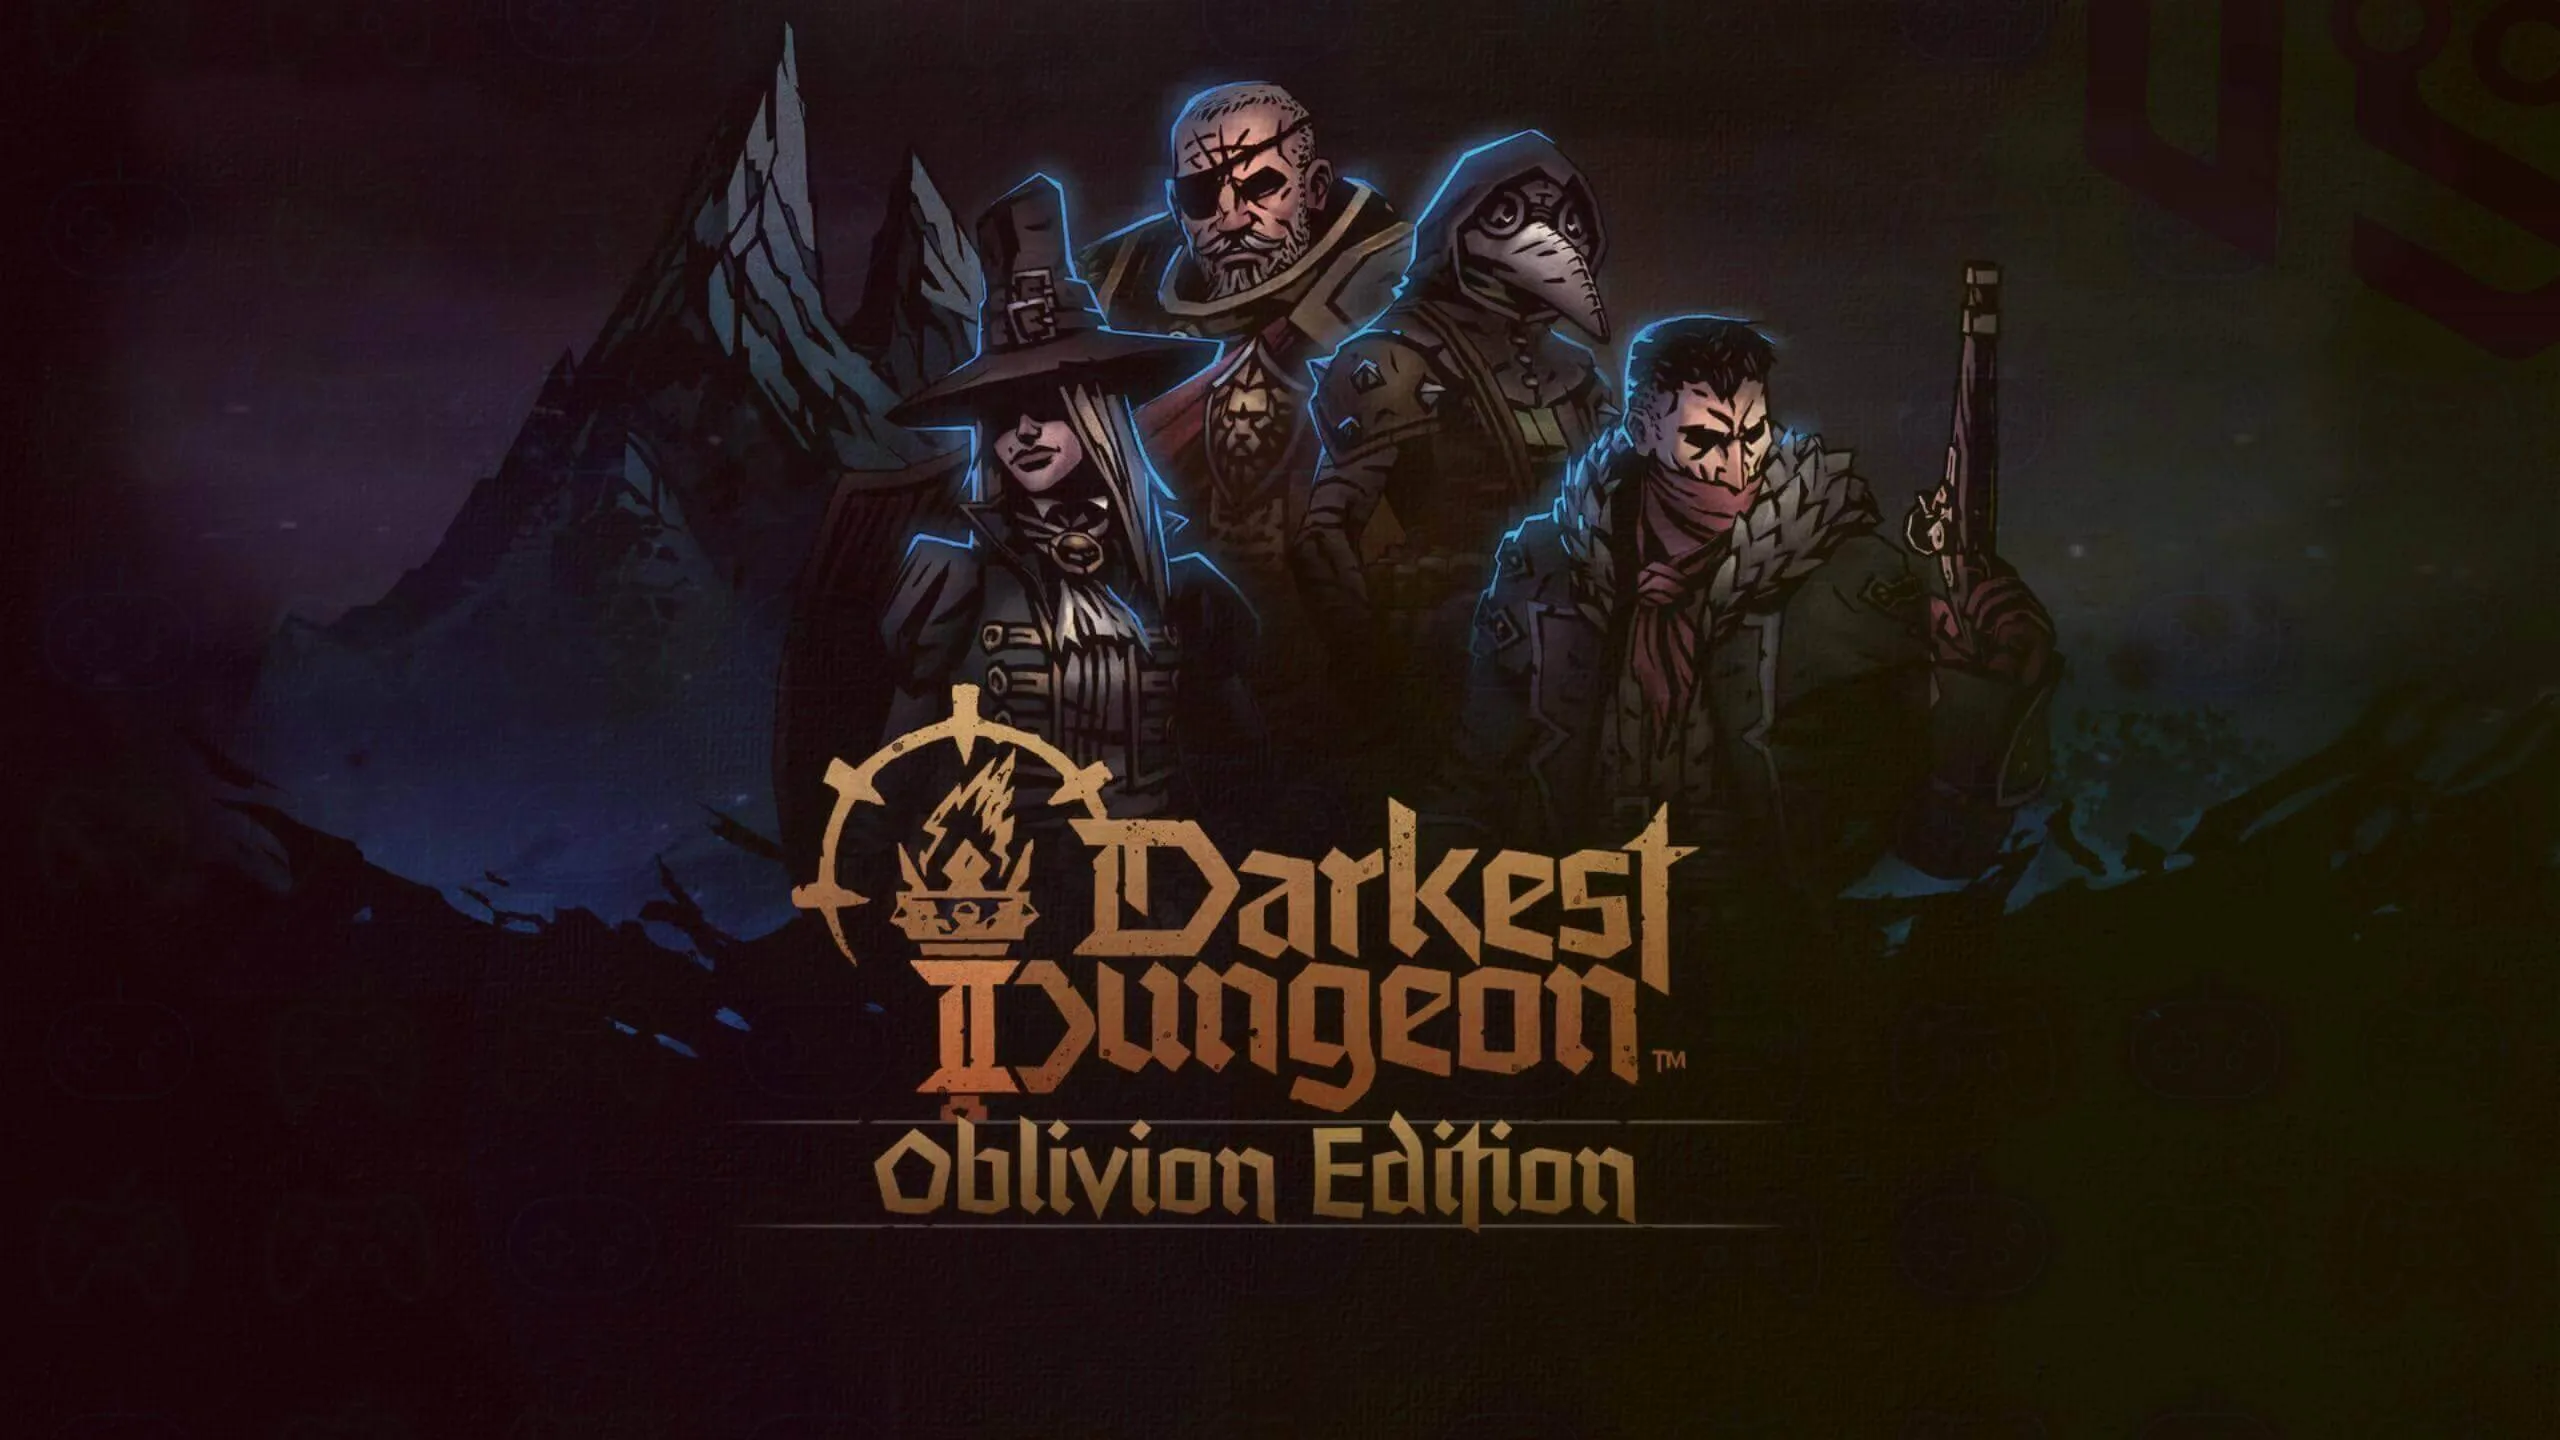 Darkest Dangeon 2 DLC oblivian edition teaser